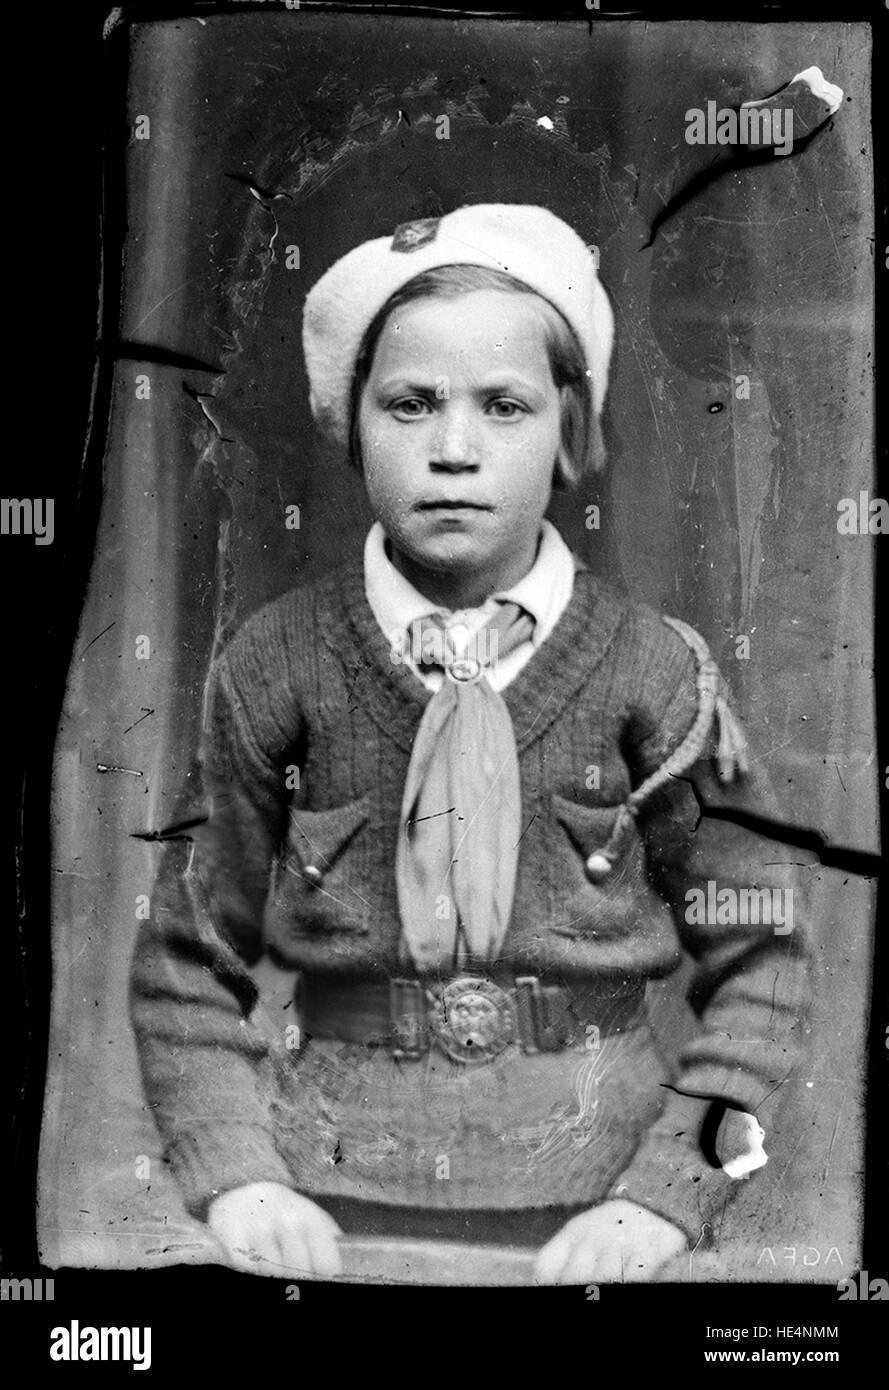 Girl wearing a &quot;Straja Țării&quot; uniform en.wikipedia.org/wiki/Straja %C8%9A%C4%83rii ( http://en.wikipedia.org/wiki/Straja %c8%9a%c4%83rii ) Stock Photo